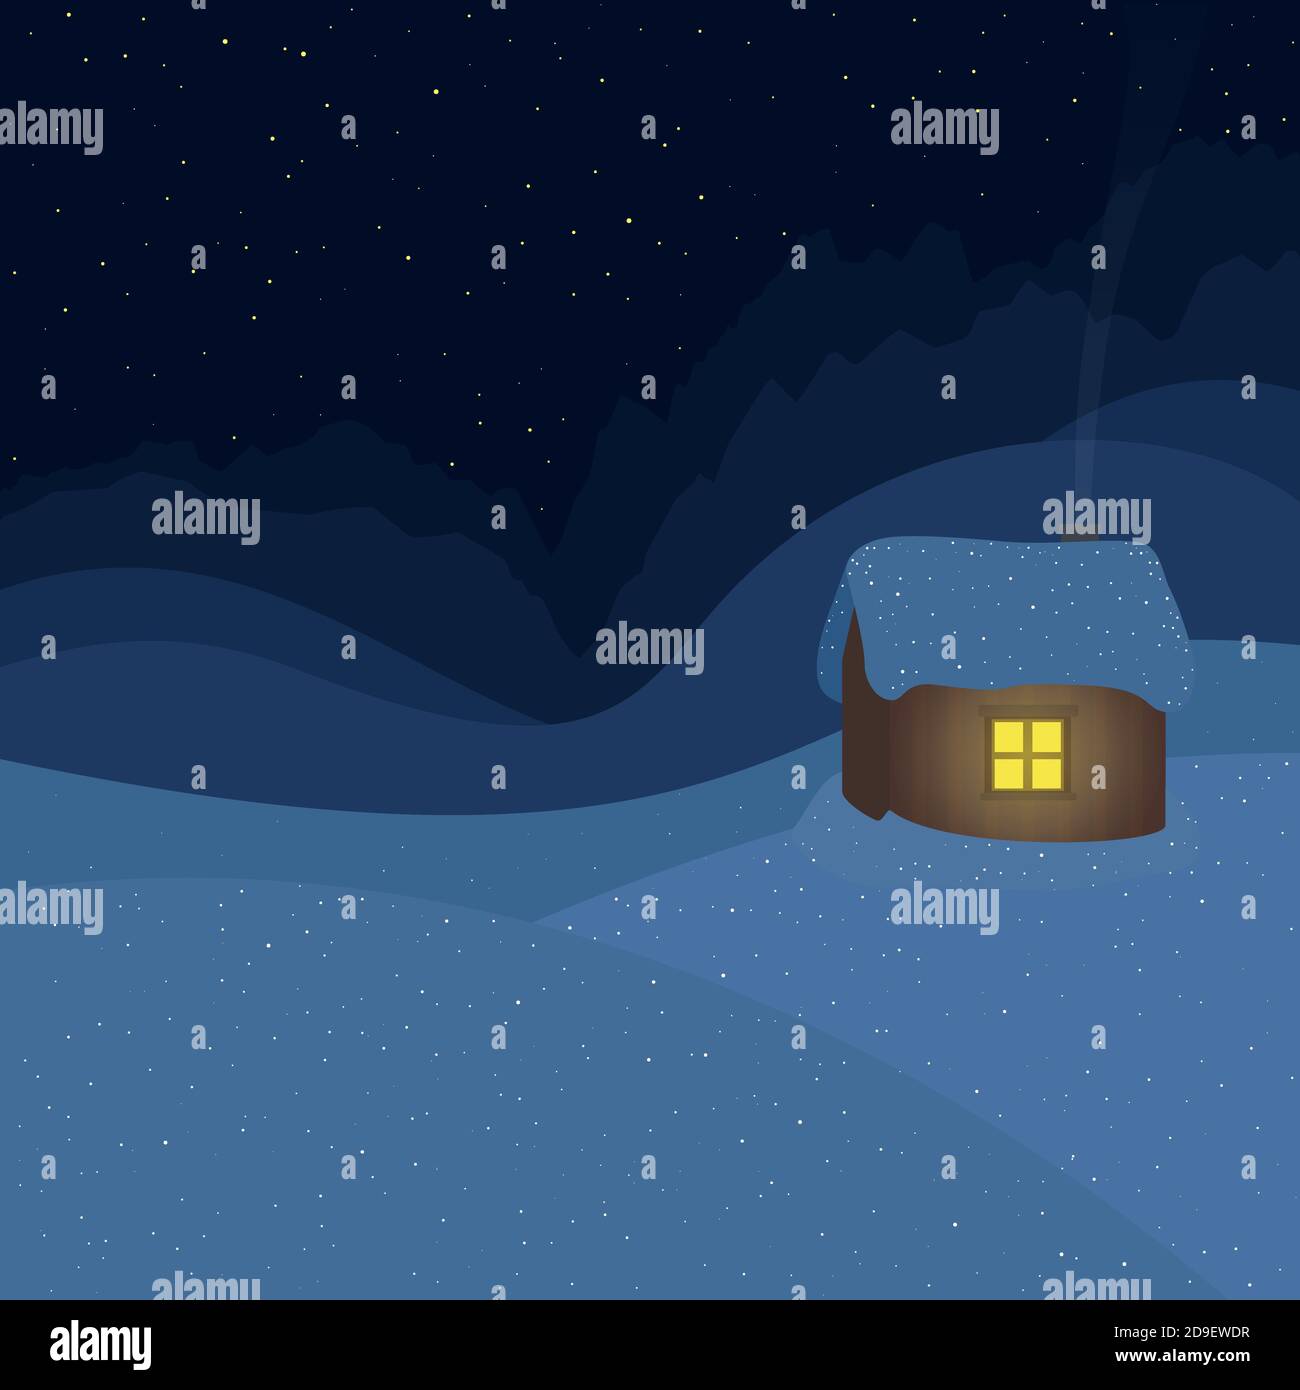 Cabane de montagne couverte de neige isolée dans un paysage de colline enneigée, fenêtre éclairée, nuit étoilée. Symbolique pour l'isolement, la retraite, la solitude, la solitude. Banque D'Images